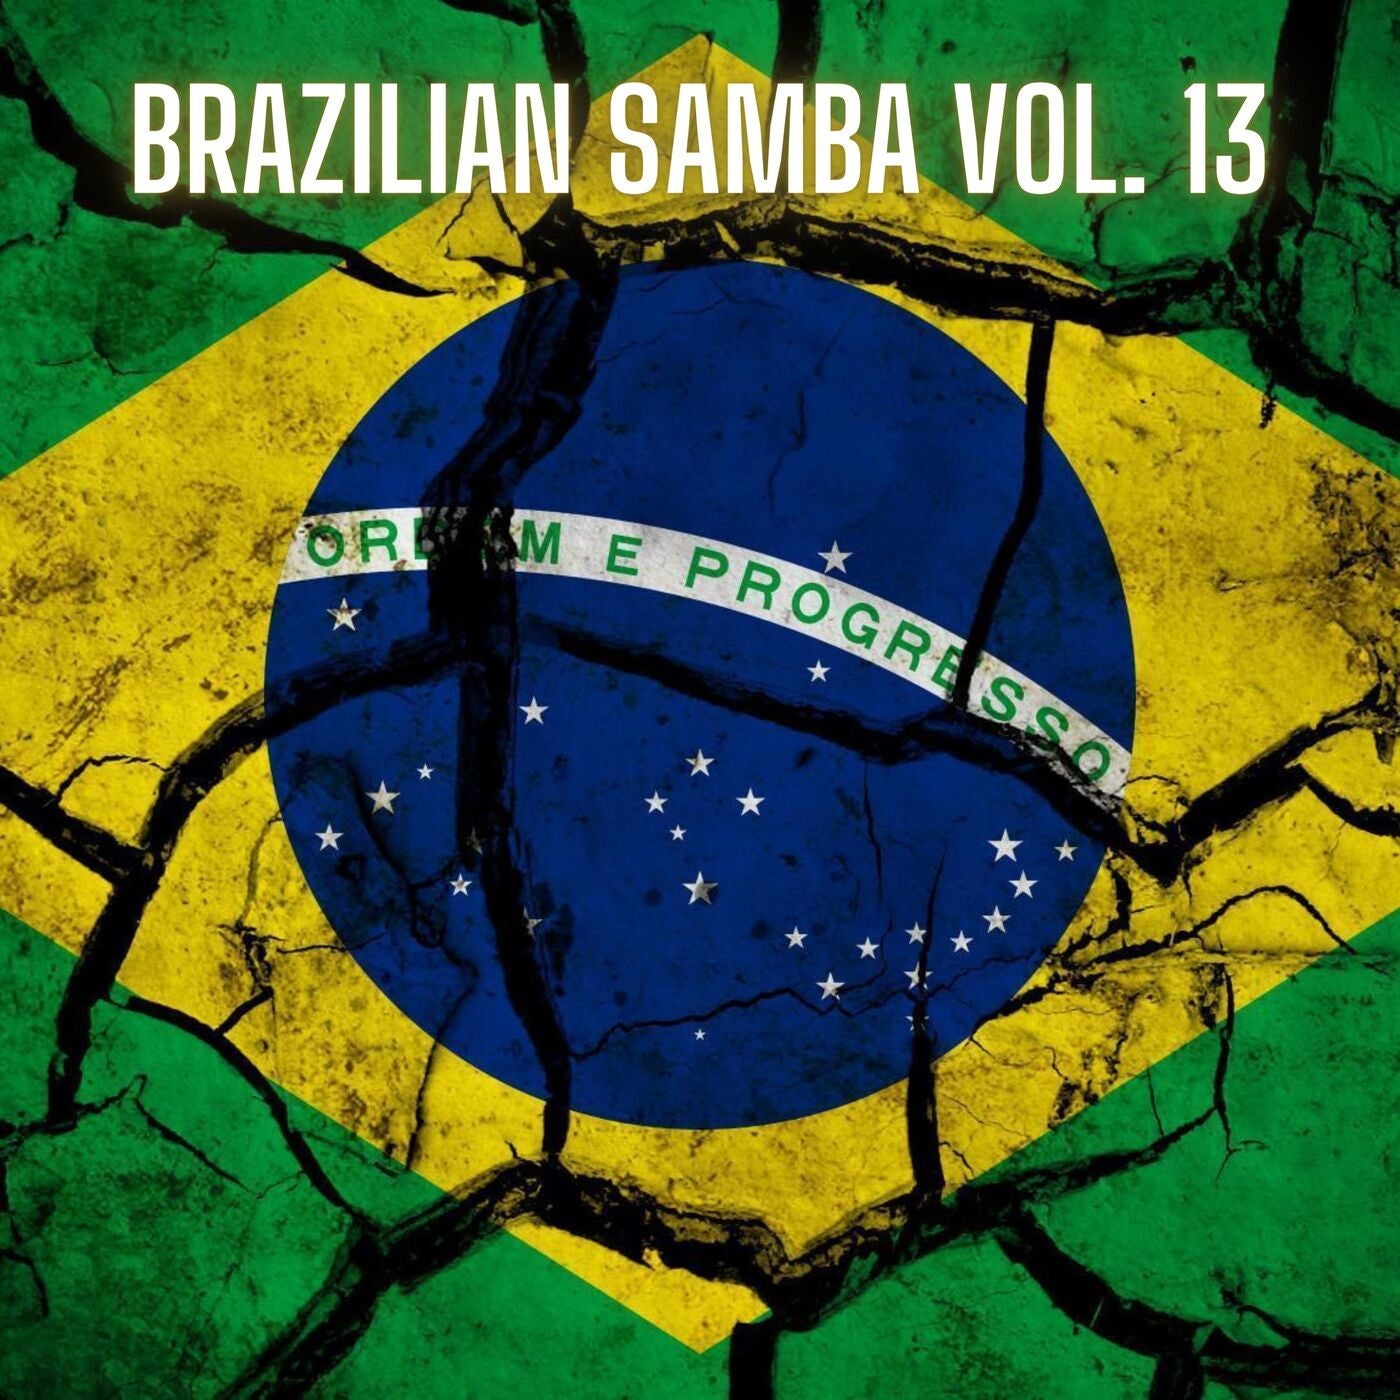 Brazilian Samba Vol. 13